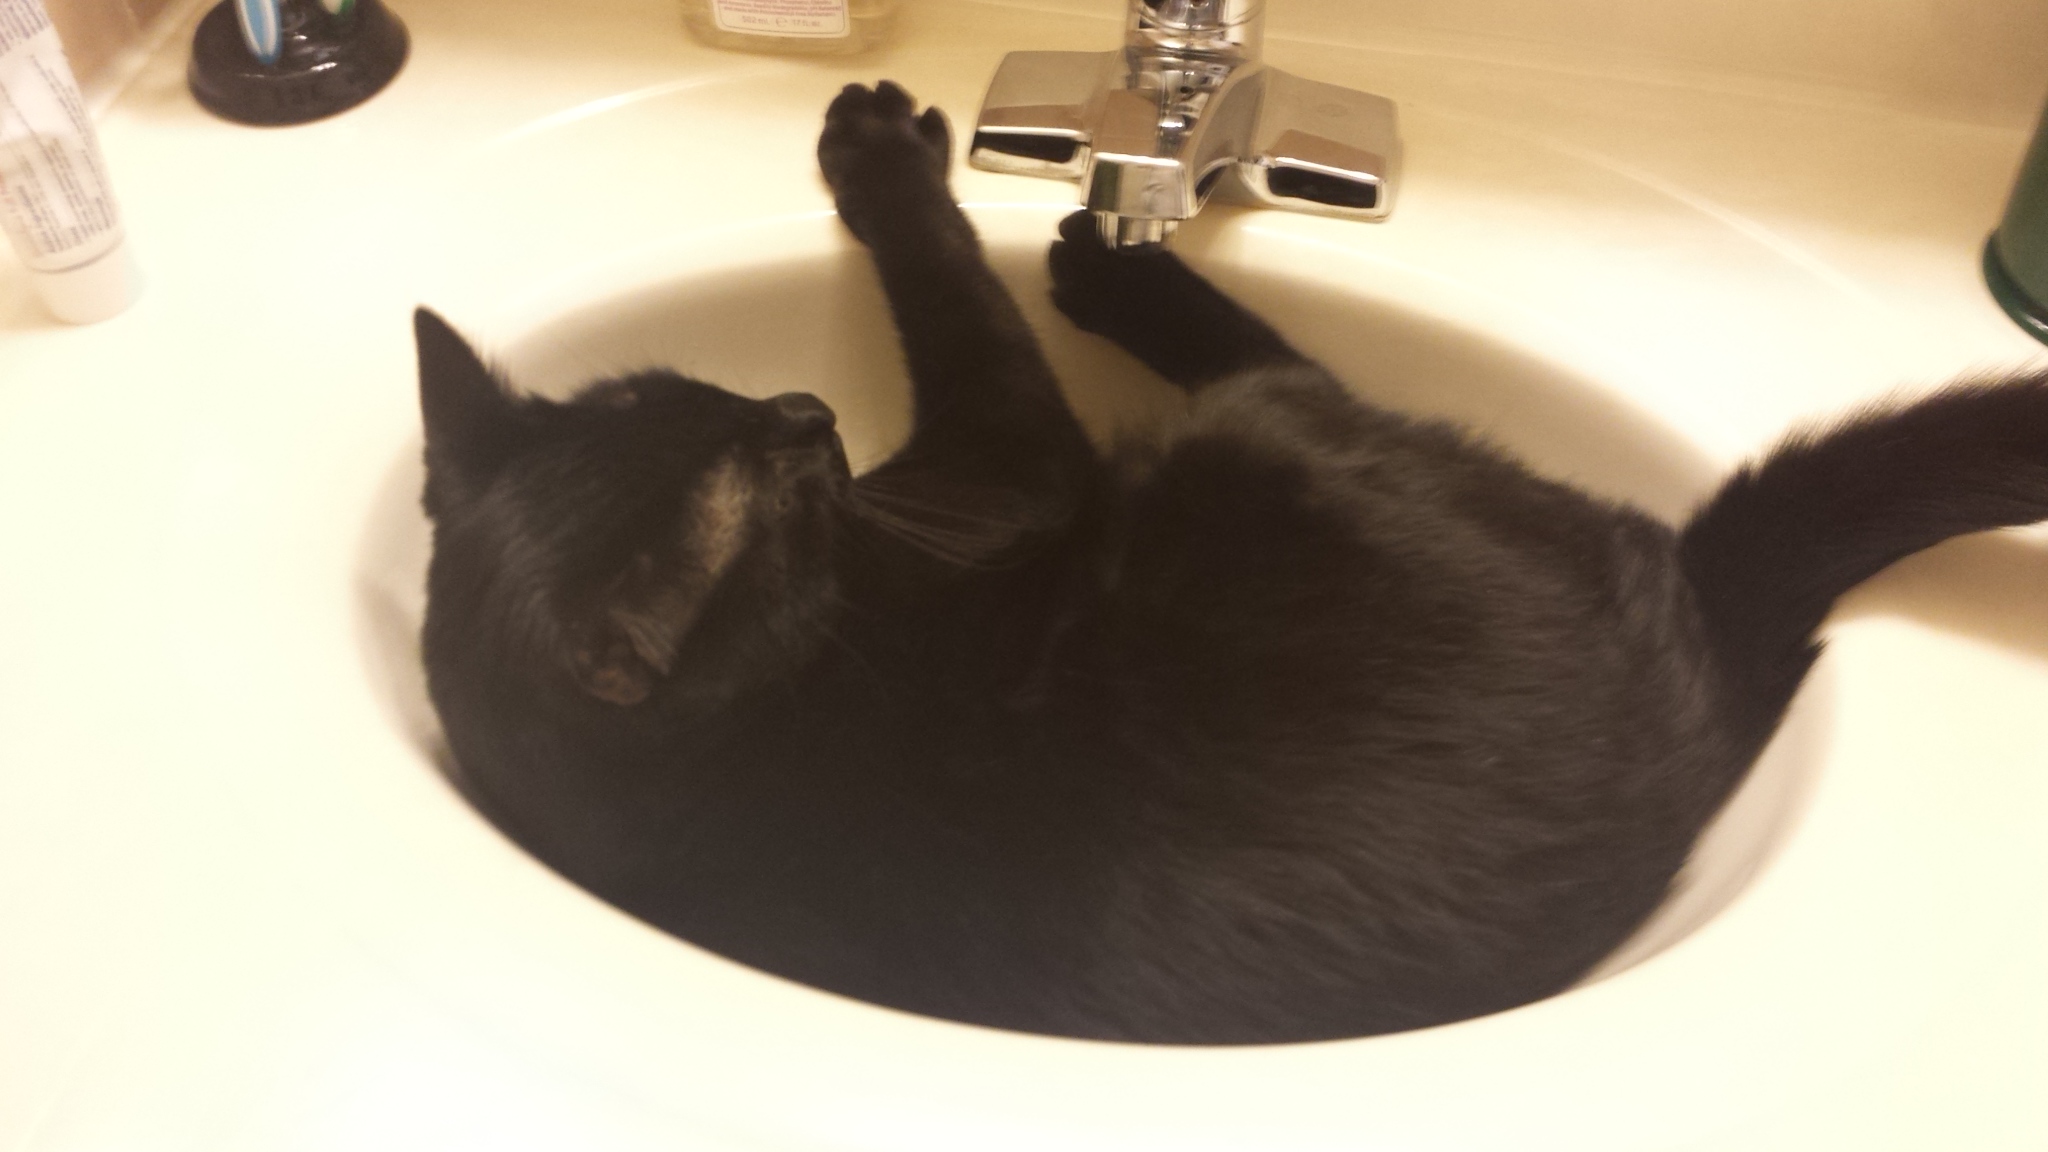 Gus in sink